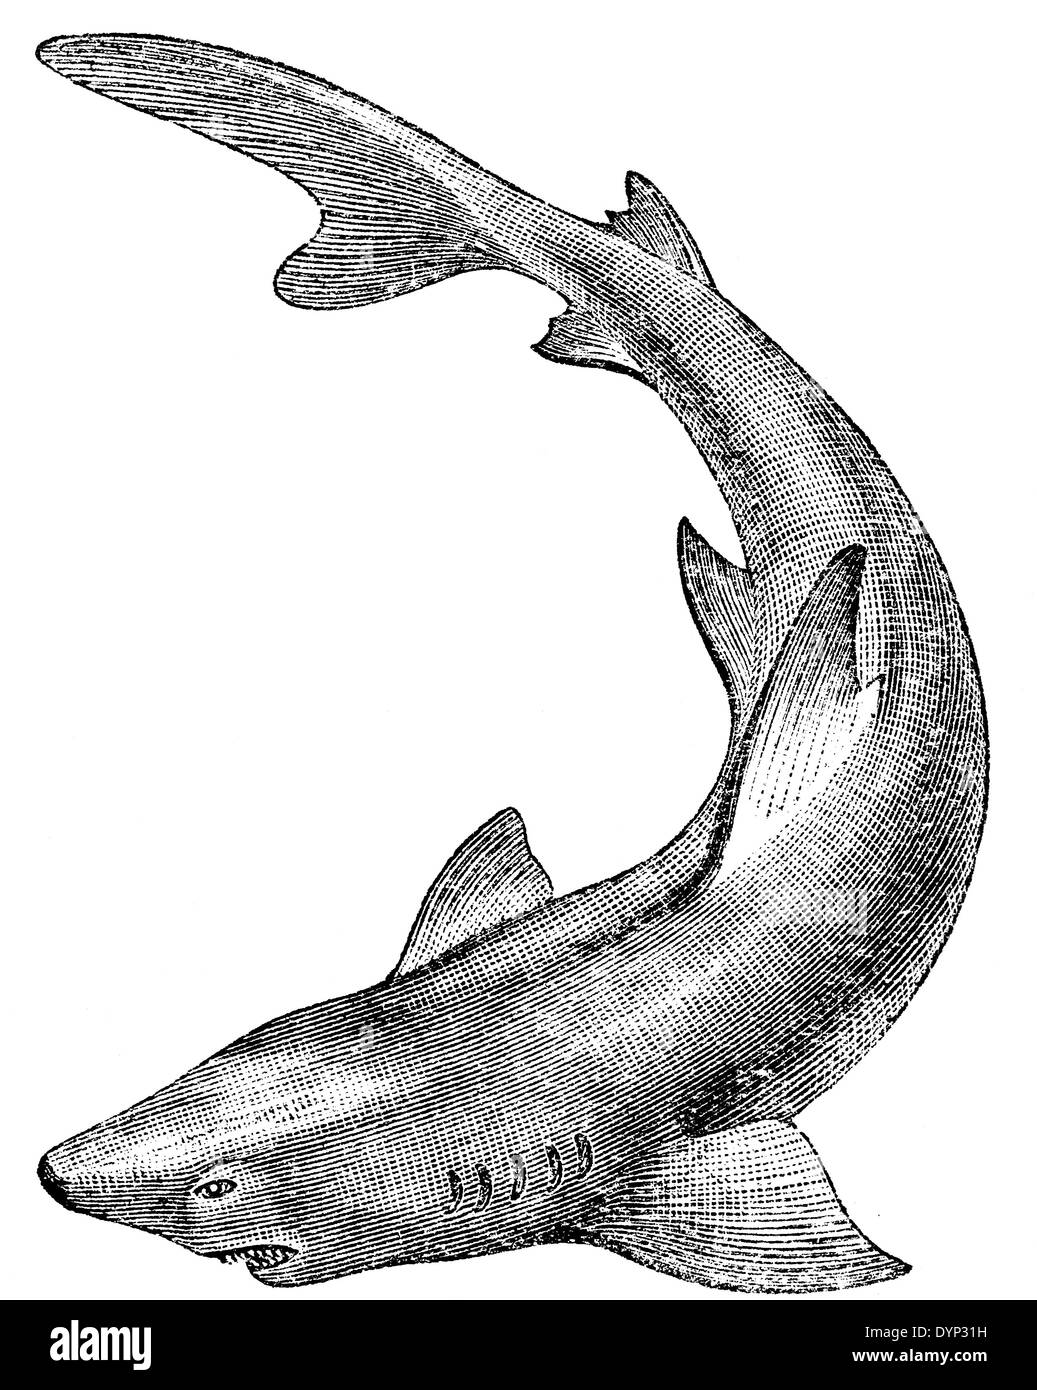 Tiger shark, illustration from Soviet encyclopedia, 1926 Stock Photo